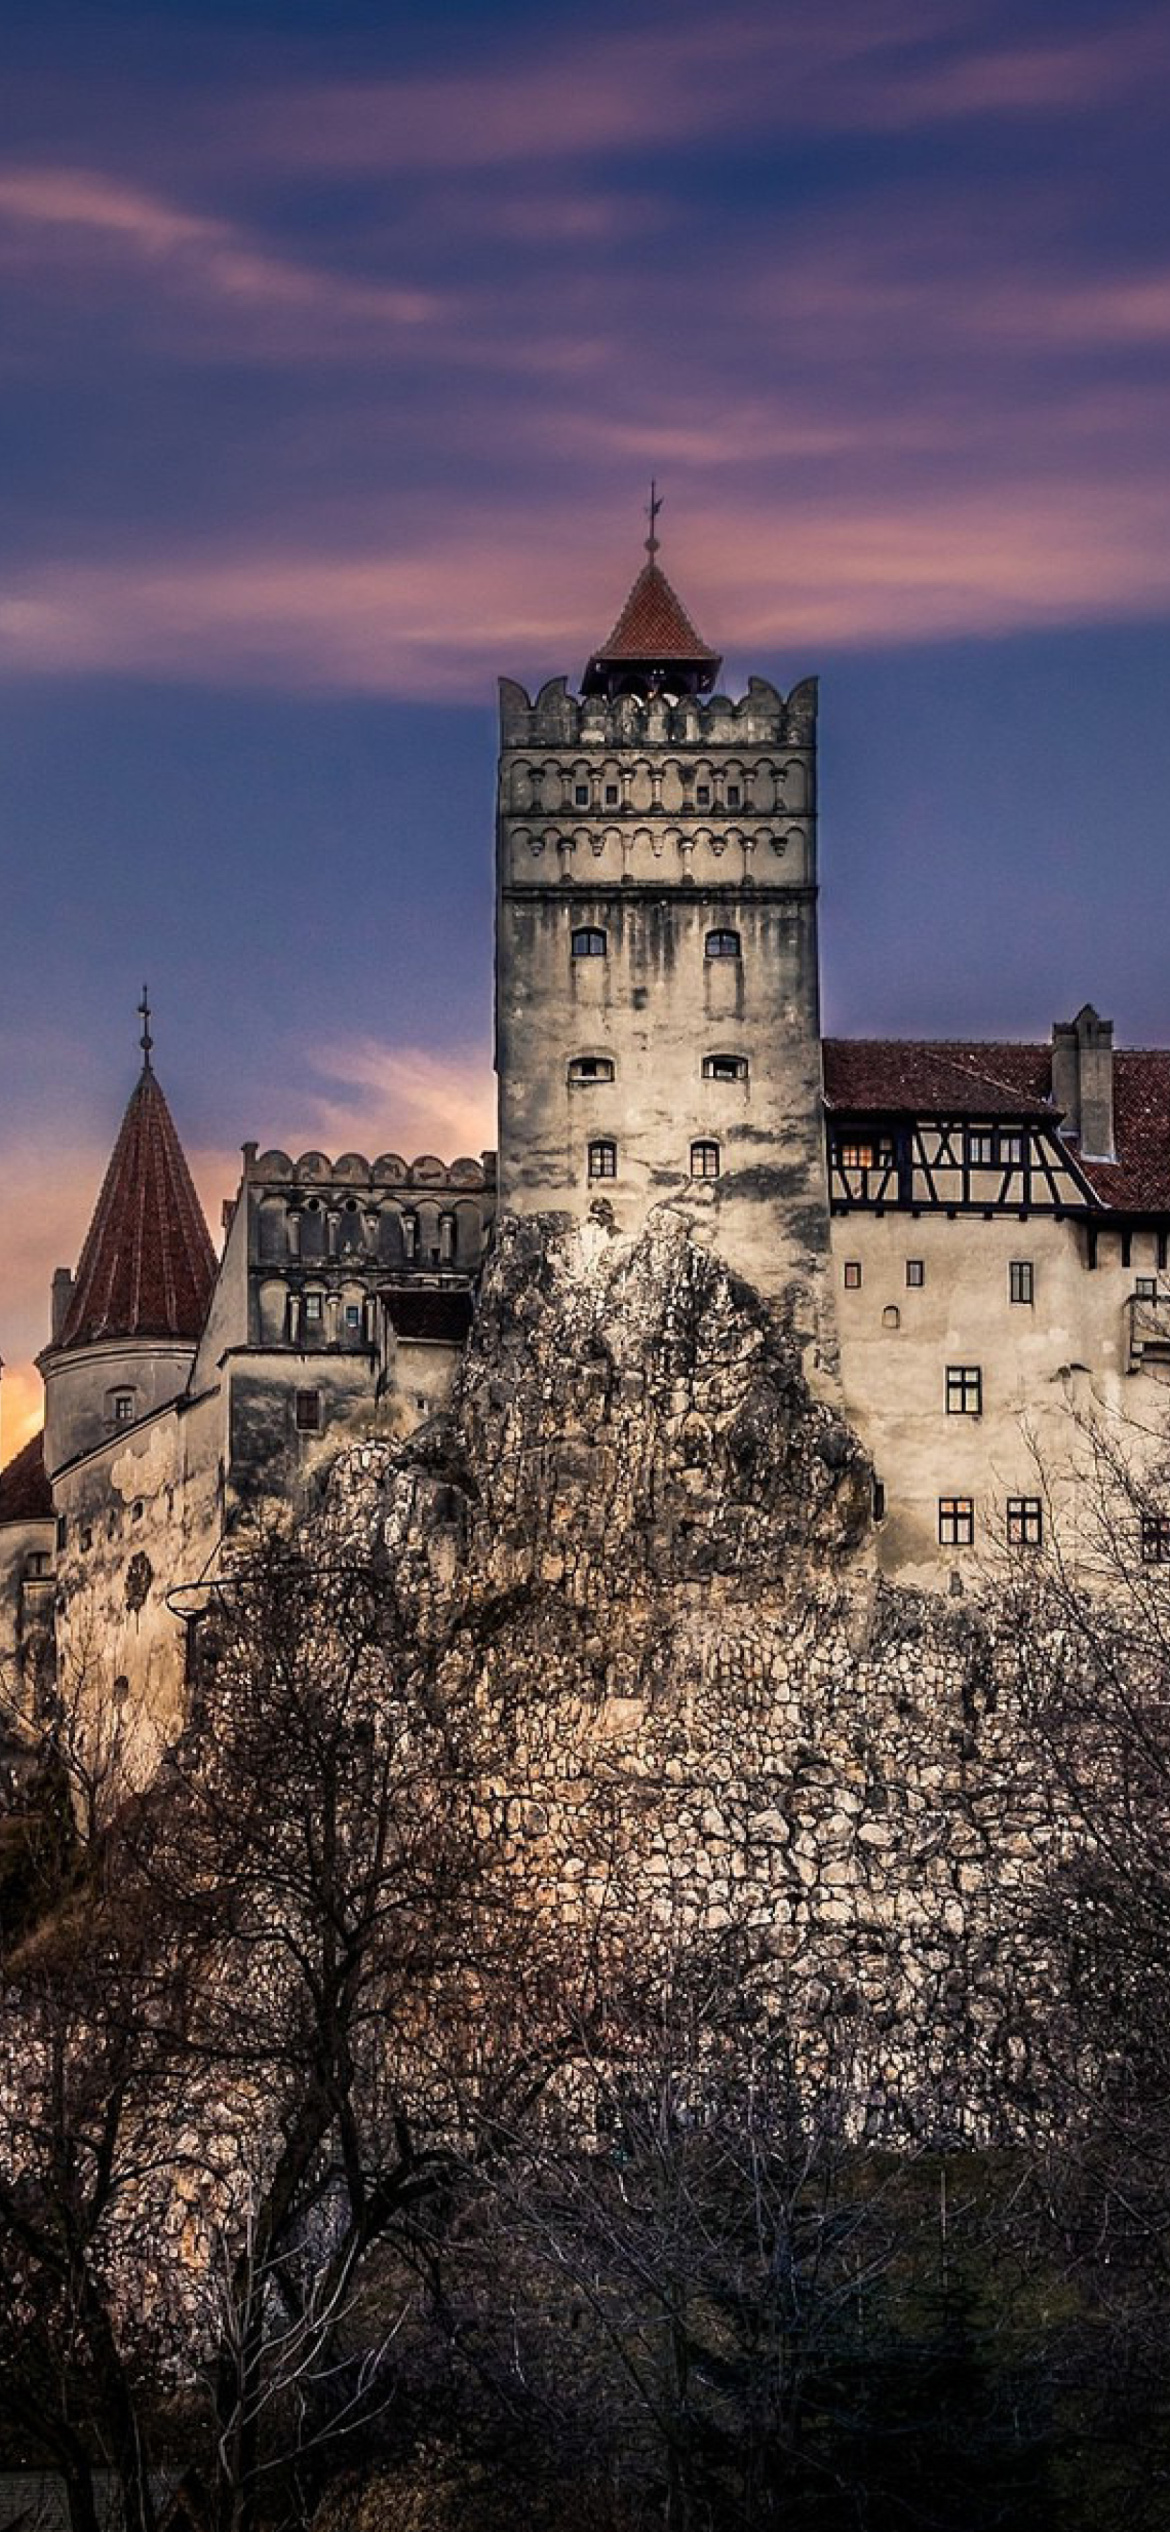 Das Bran Castle in Romania Wallpaper 1170x2532